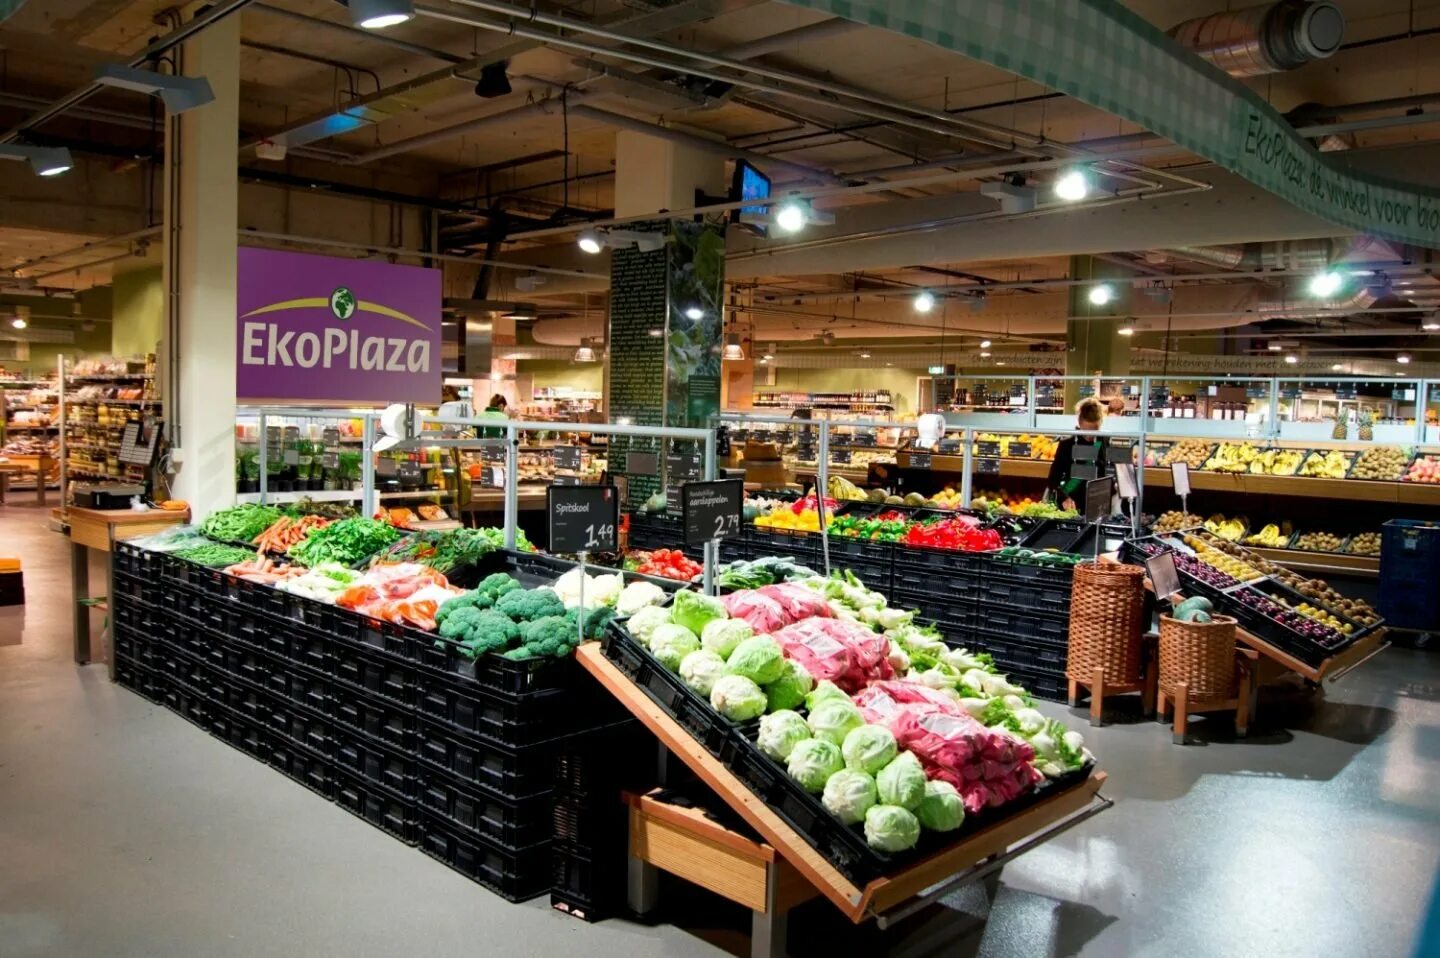 Прилавок 5 букв. Ekoplaza в Амстердаме. Супермаркет. Супермаркеты в Голландии. Магазин продуктов в Нидерландах.